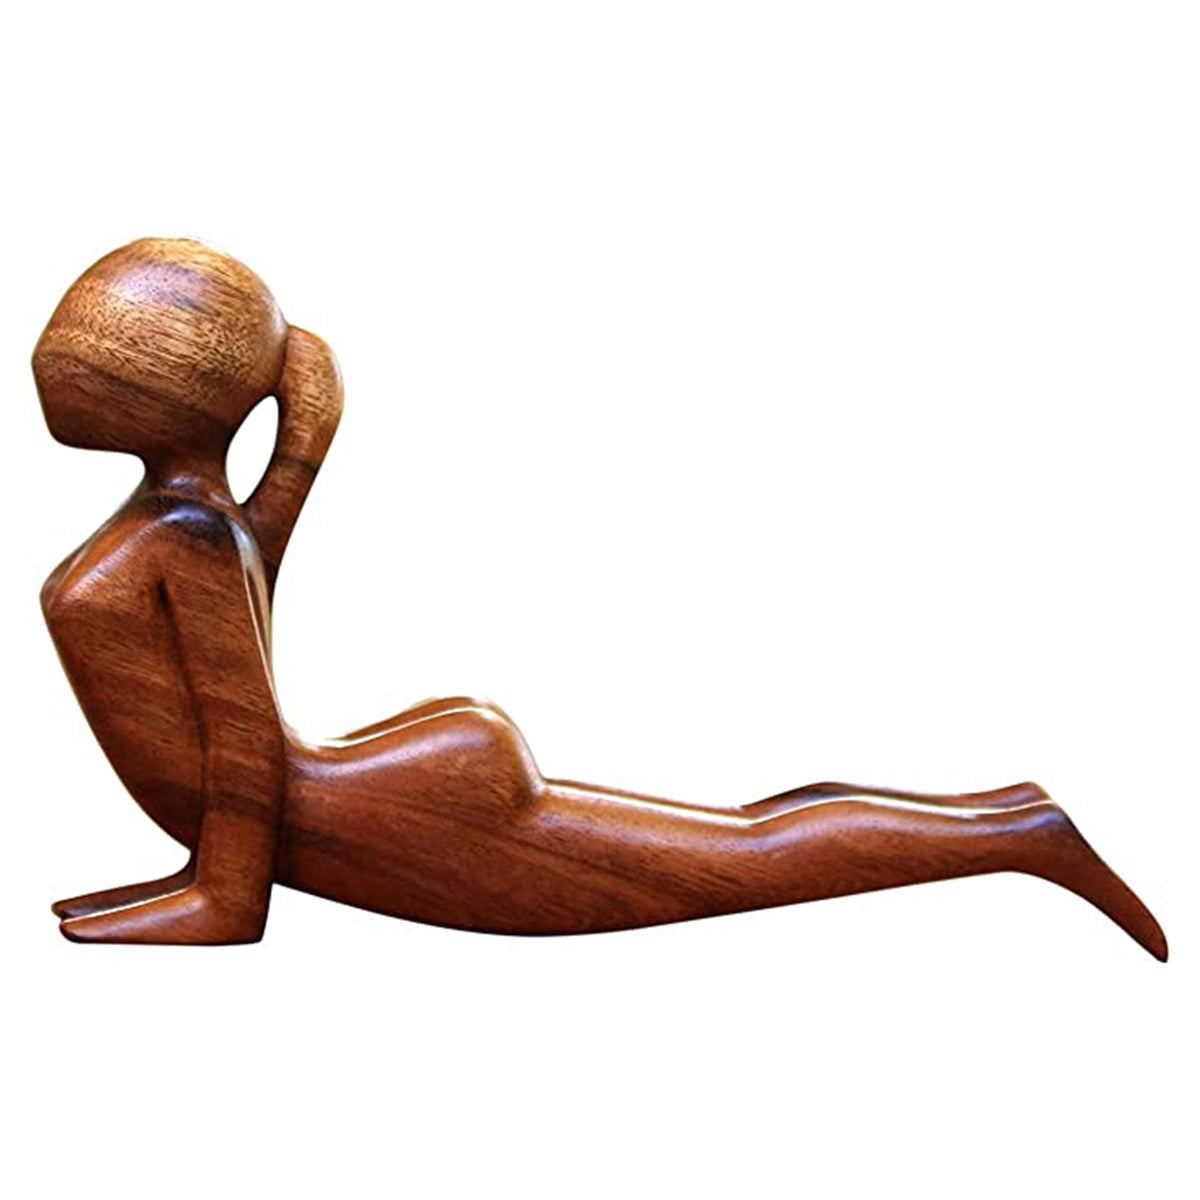 Wooden Yoga Poses Statue - Yogi Emporium